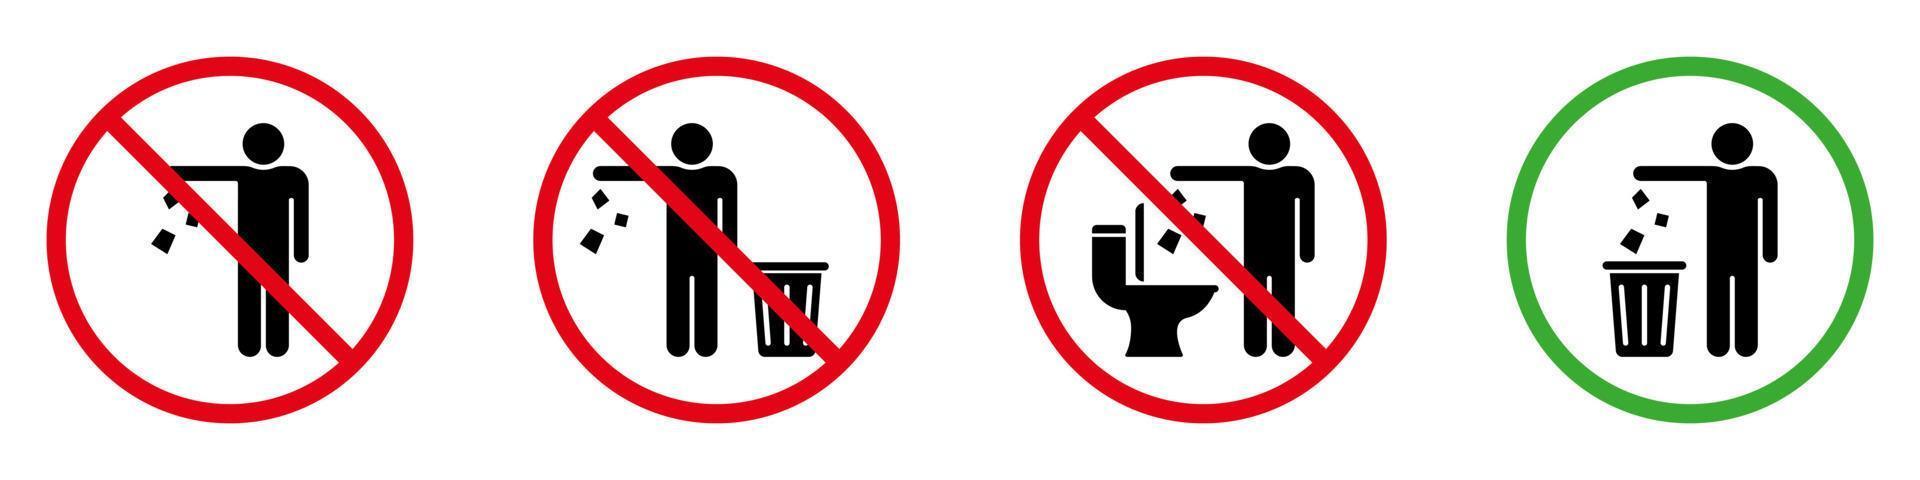 mantenha o sinal de silhueta limpa. permitido jogar lixo, resíduos, lixo no símbolo da lixeira. não jogue lixo no ícone do glifo do banheiro. aviso, por favor, solte o lixo no adesivo da lixeira. ilustração vetorial isolado. vetor